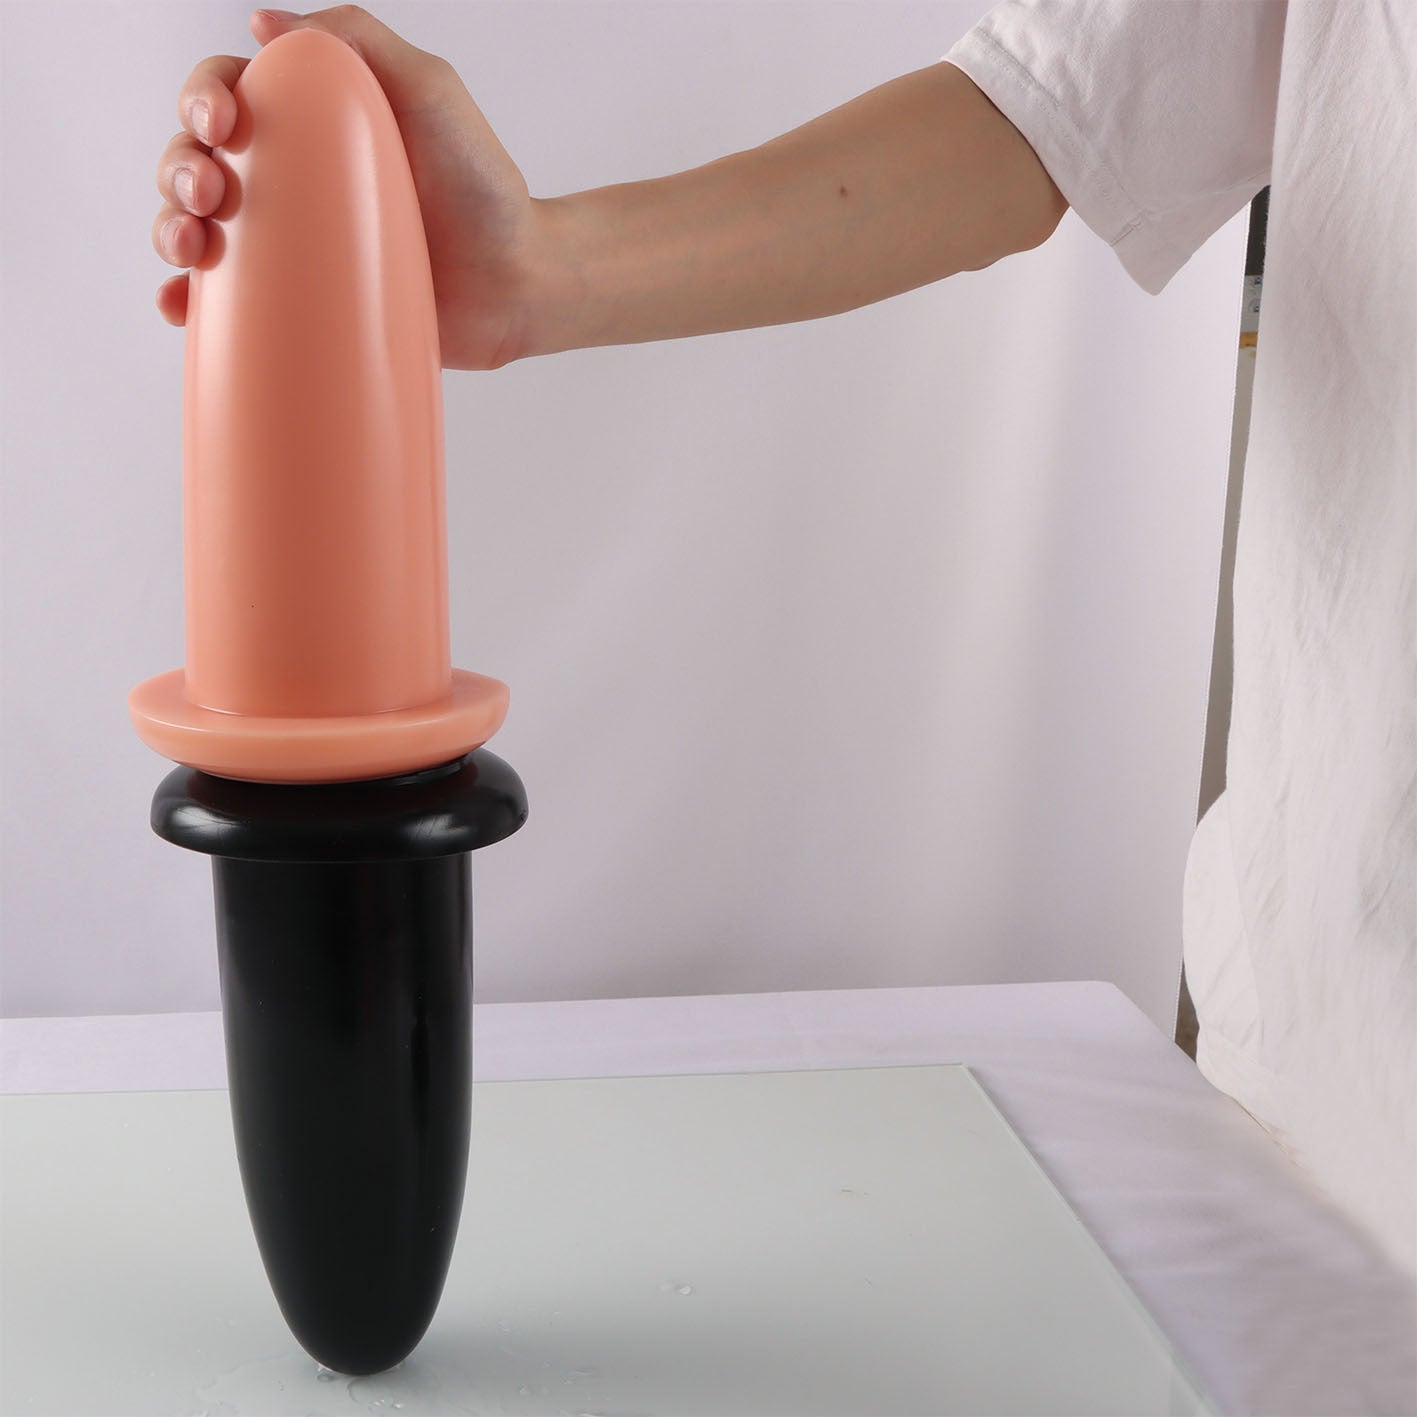 Missile Analdildo Butt Plug - Analdilatator mit großem Umfang, Expander, Sexspielzeug für Männer und Frauen